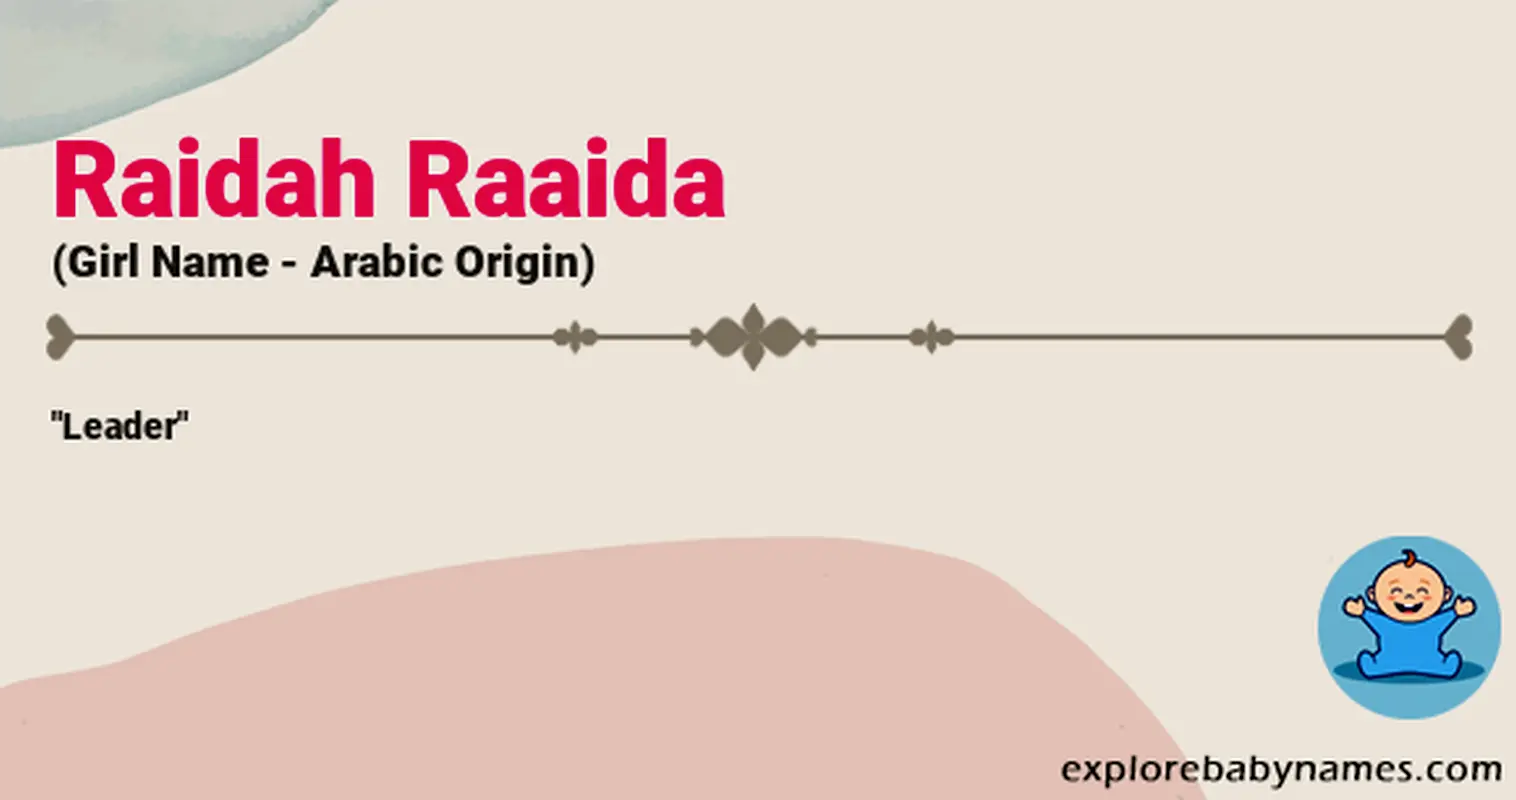 Meaning of Raidah Raaida